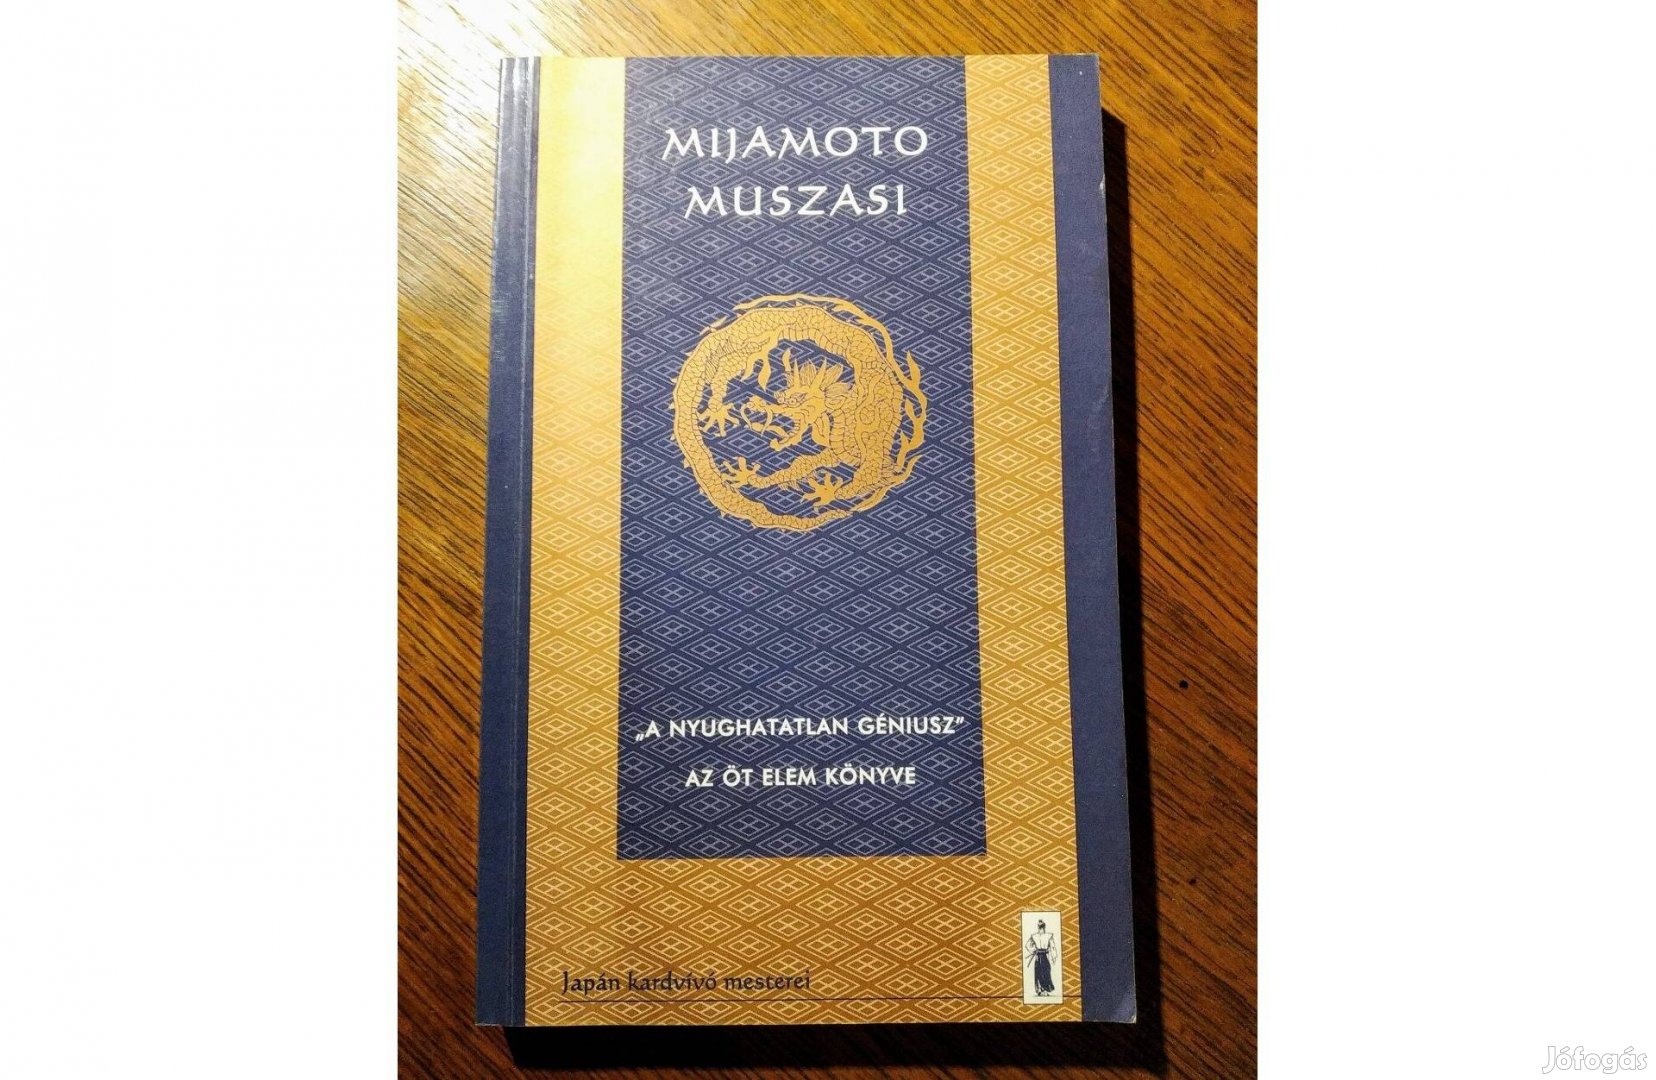 Mijamoto Muszasi: "A nyughatatlan géniusz" Az öt elem könyve